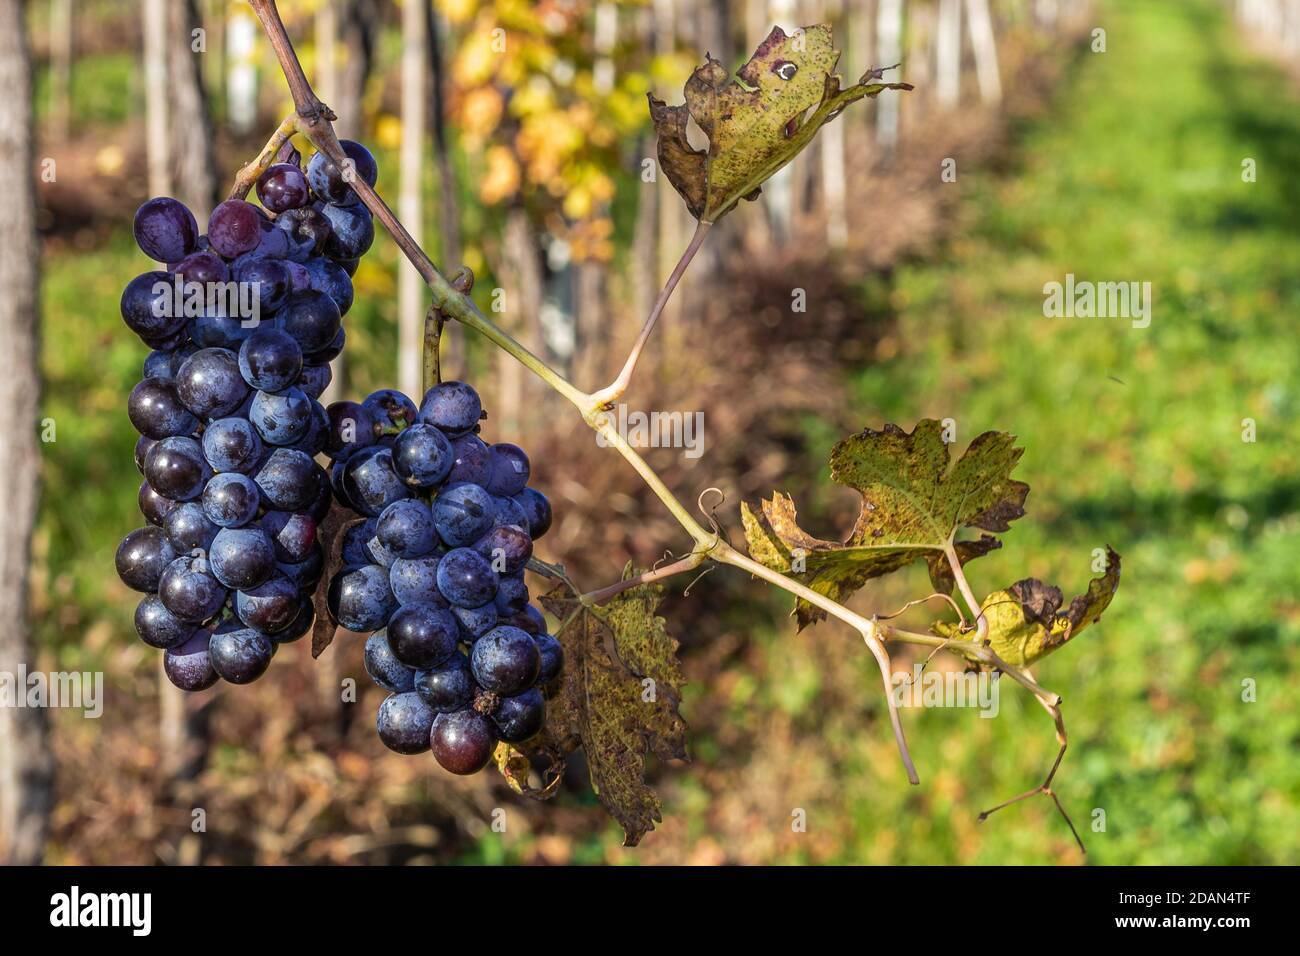 Mazzo di uve del Valpolicella, la zona collinare che precede l'inizio delle Prealpi Veronesi. Foto Stock